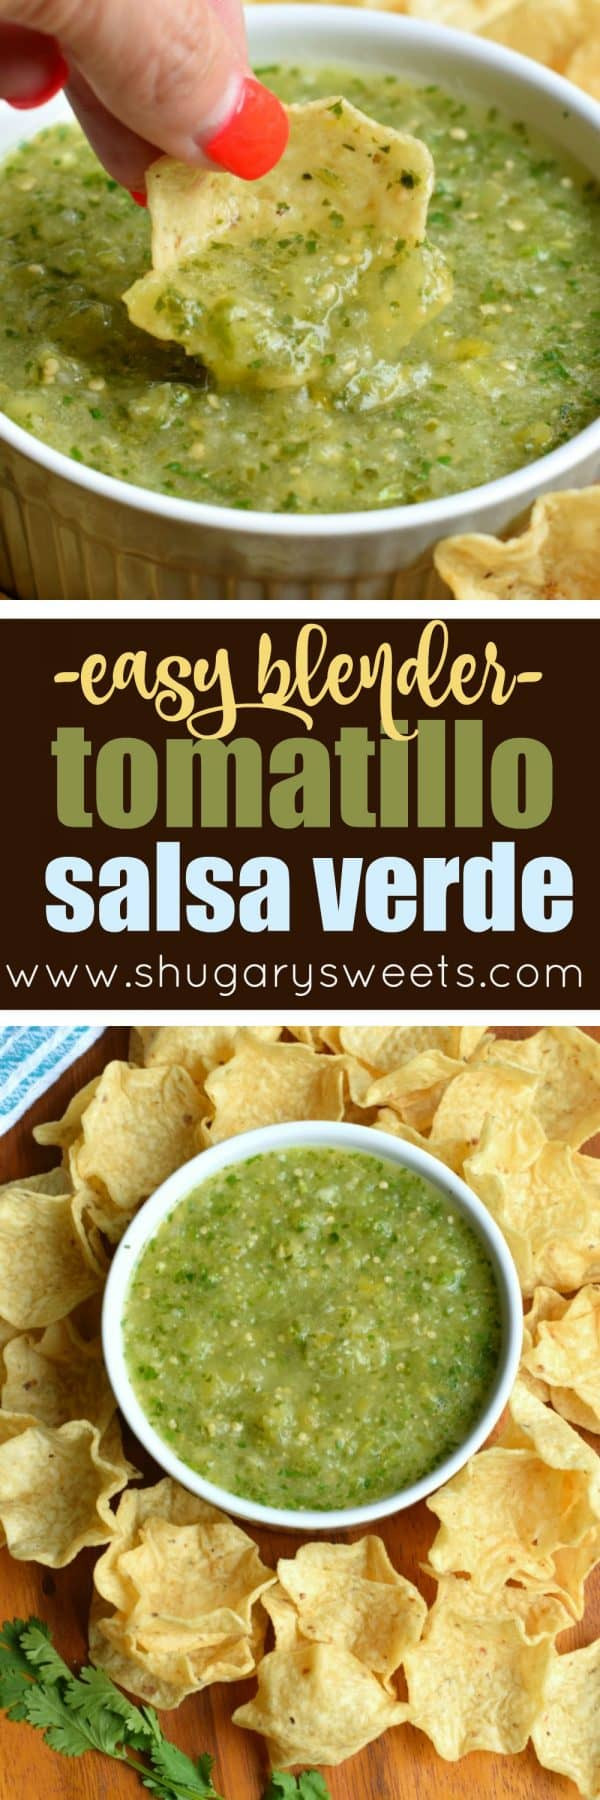 Tomatillo Salsa Verde Recipe
 Easy Blender Tomatillo Salsa Verde Recipe